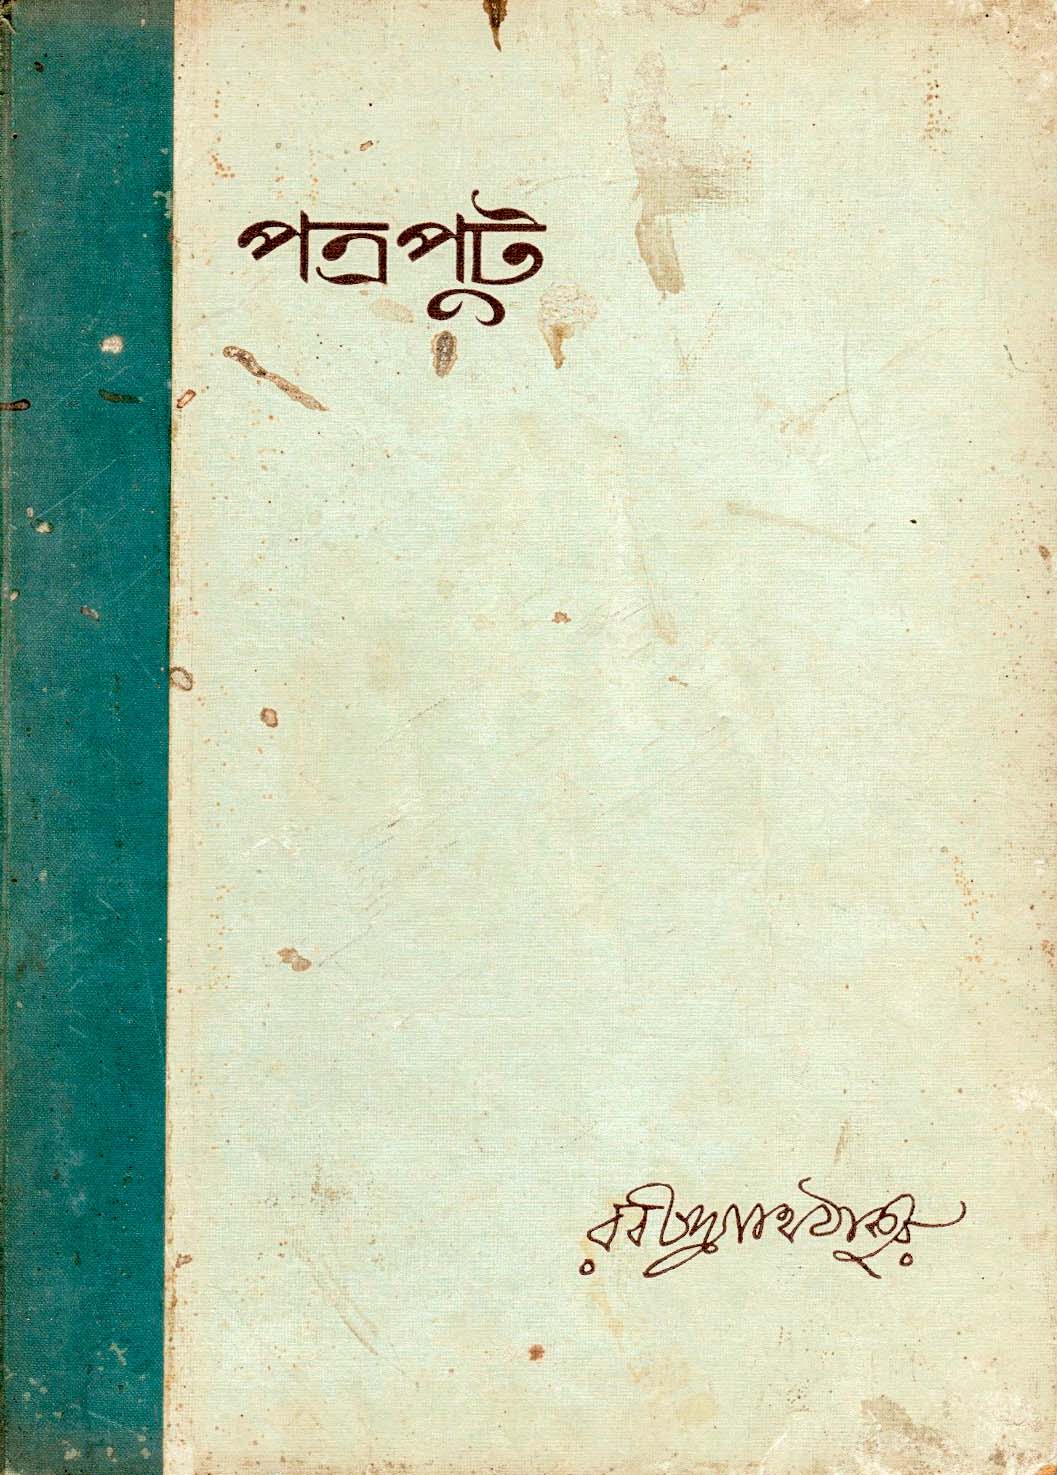 Patraput by Rabindranath Tagore (1936)